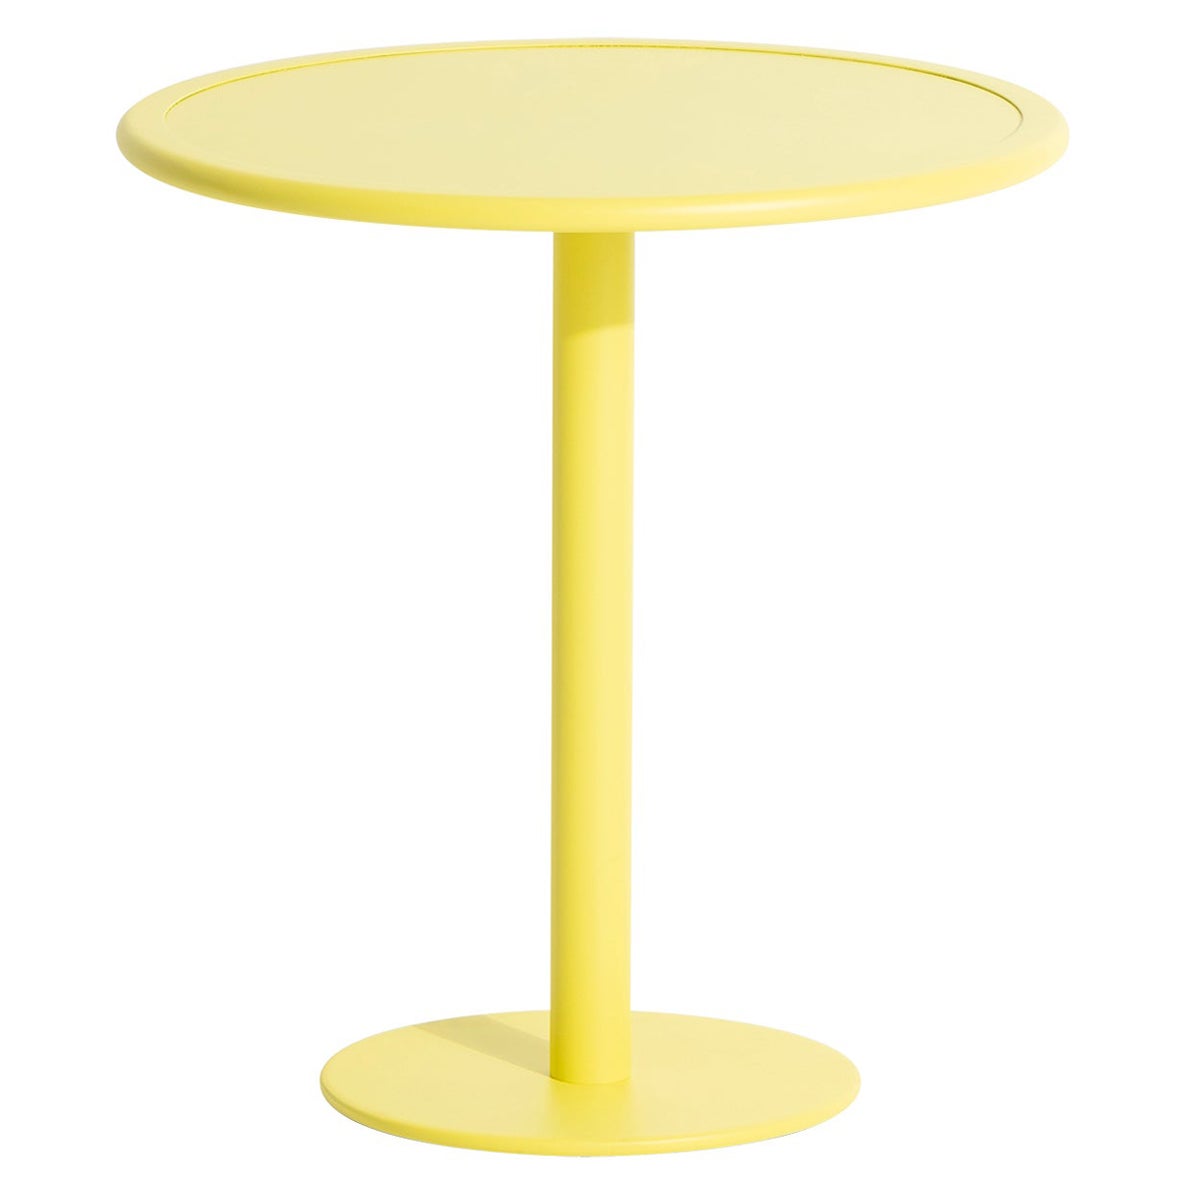 Petite table de salle à manger ronde bistro Week-end en aluminium jaune, de Friture, 2017 en vente